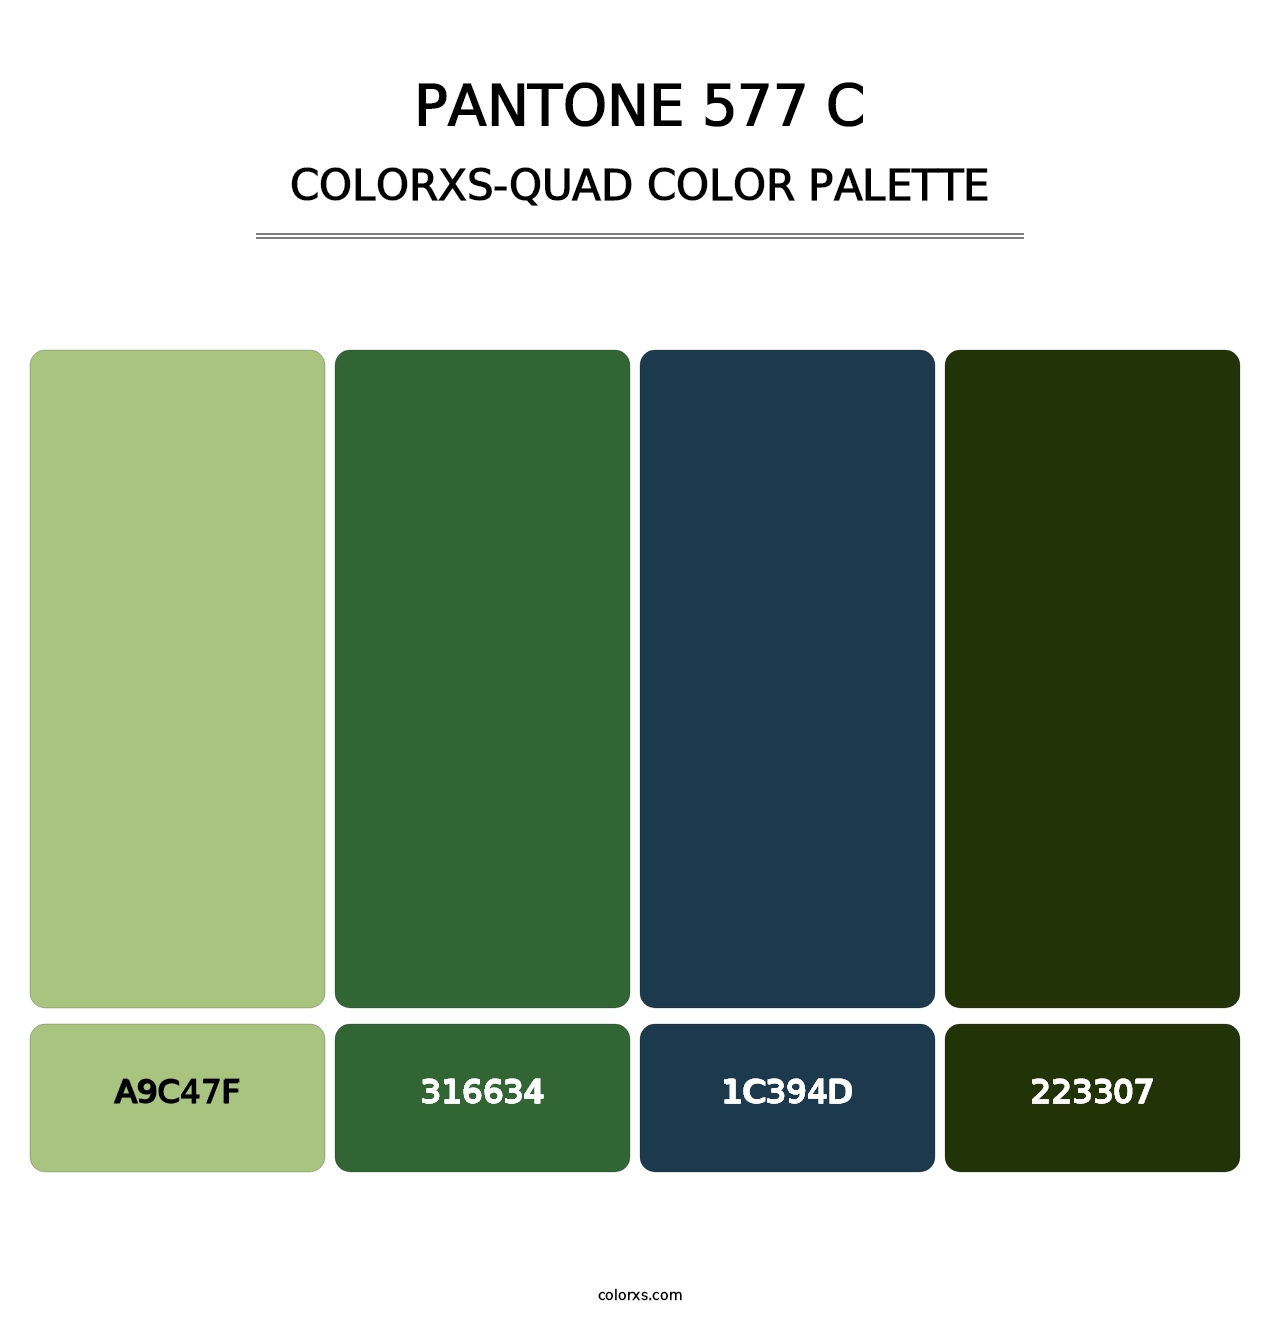 PANTONE 577 C - Colorxs Quad Palette